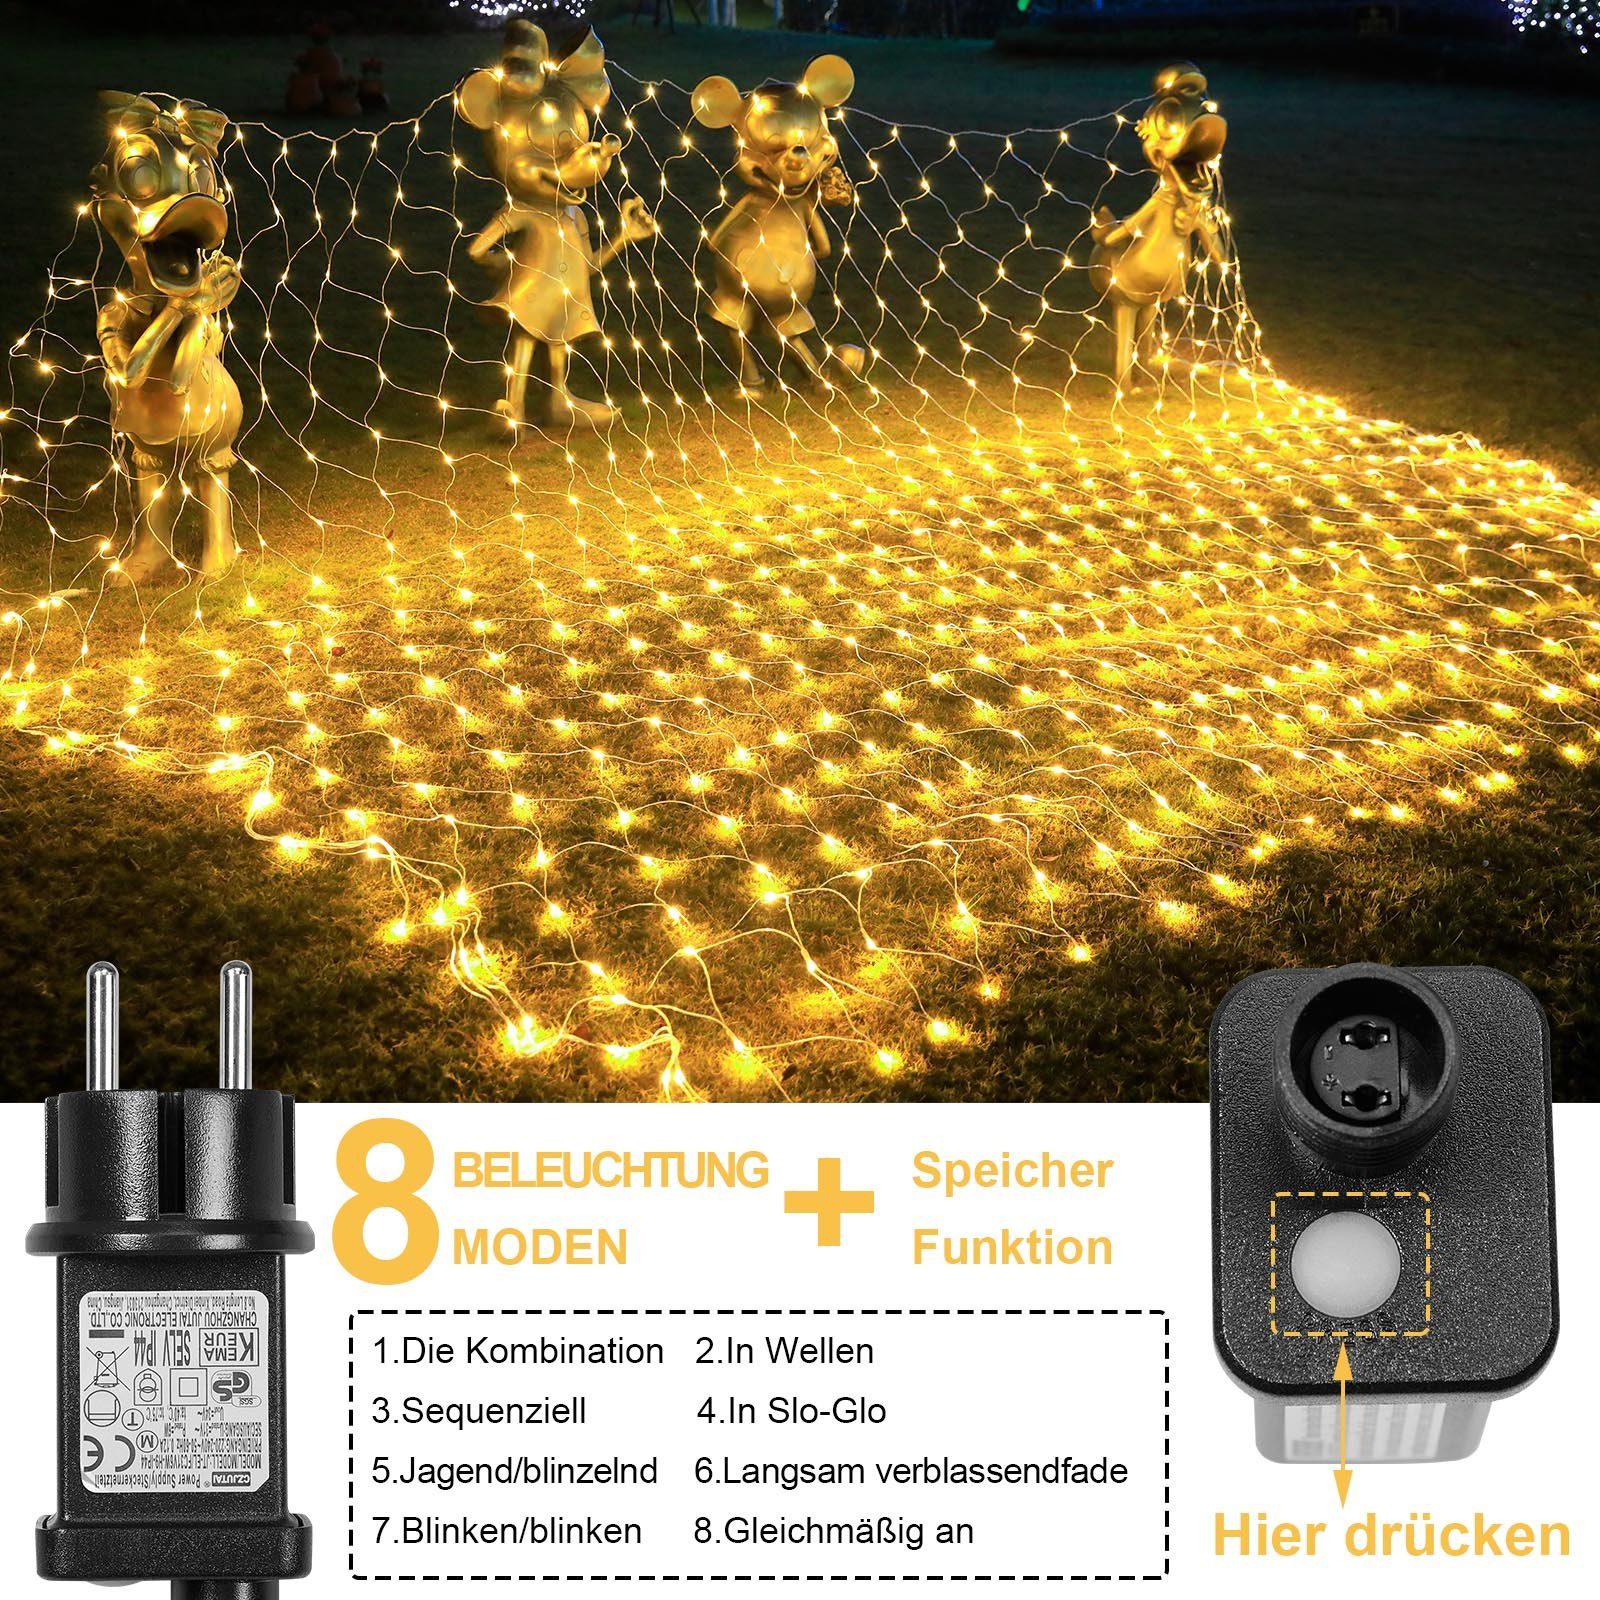 MUPOO LED-Lichternetz LED Lichternetz Warmweiß,6W 8 Modi Energiesparen;Timer-Funktion; Speicher-Funktion Modi 2 Lichteffekt; m, x Lichterkette,3 8 Energiesparen